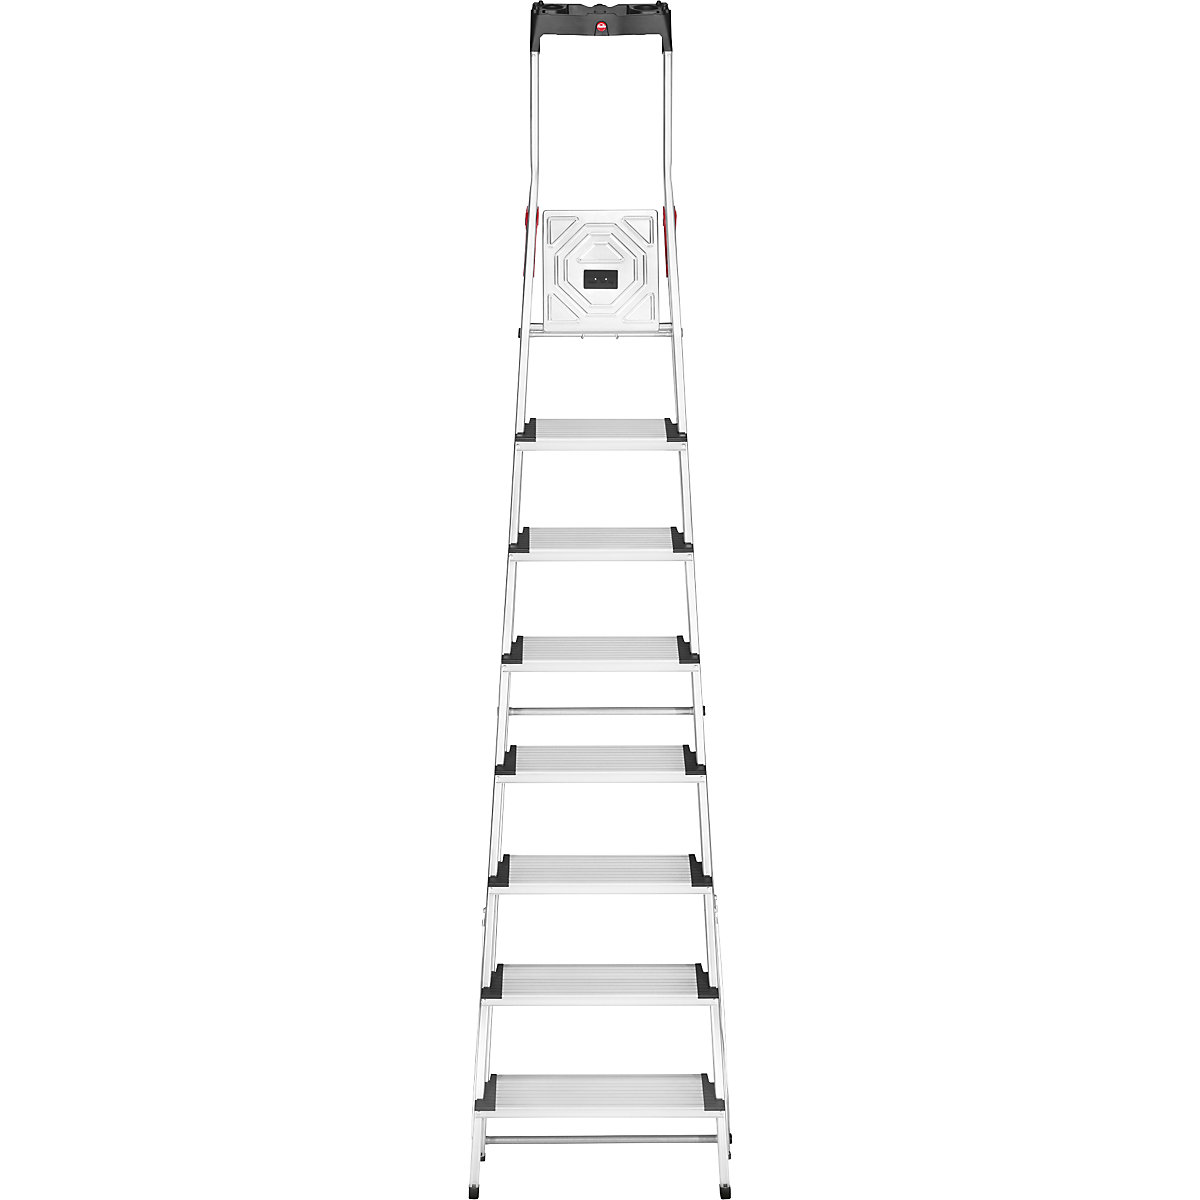 Aluminijasta dvokraka lestev s stopnicami ComfortLine L80 – Hailo (Slika izdelka 14)